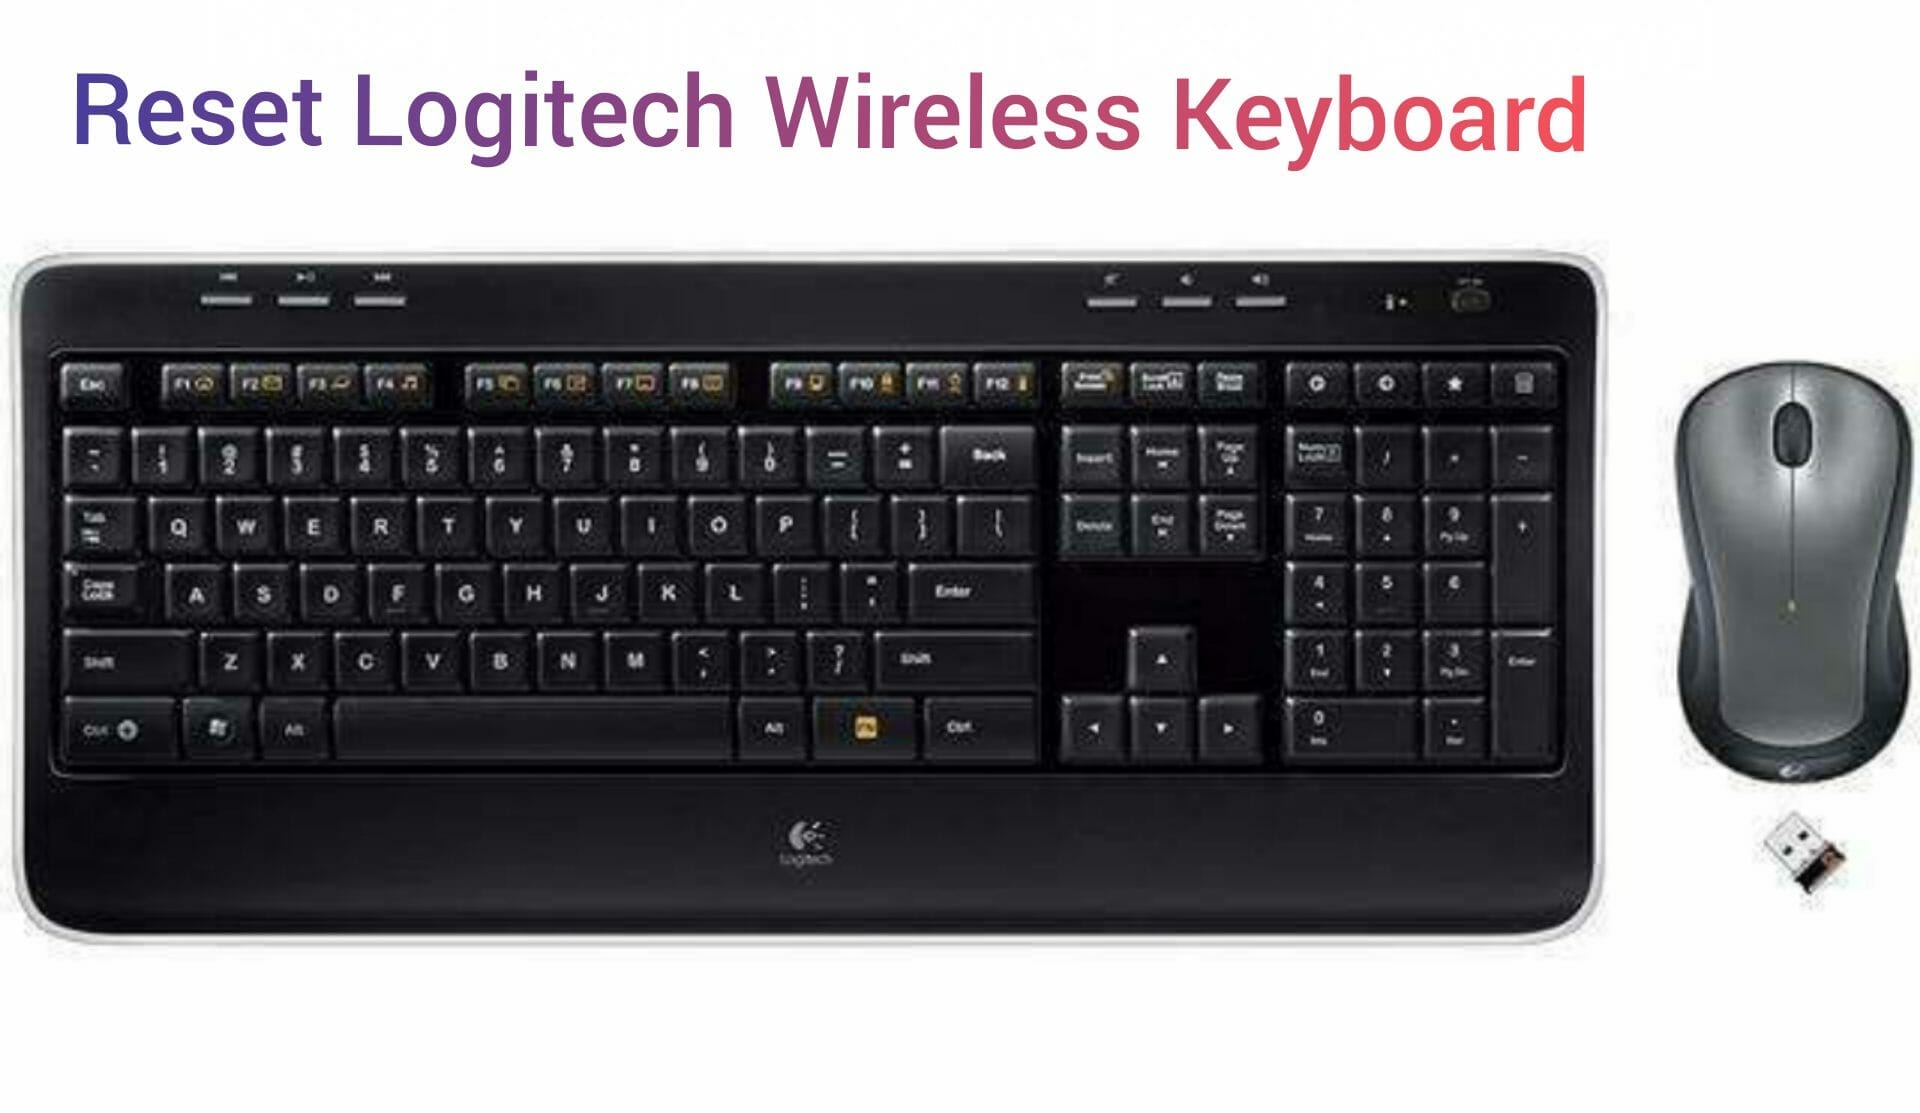 Reset Logitech Wireless Keyboard